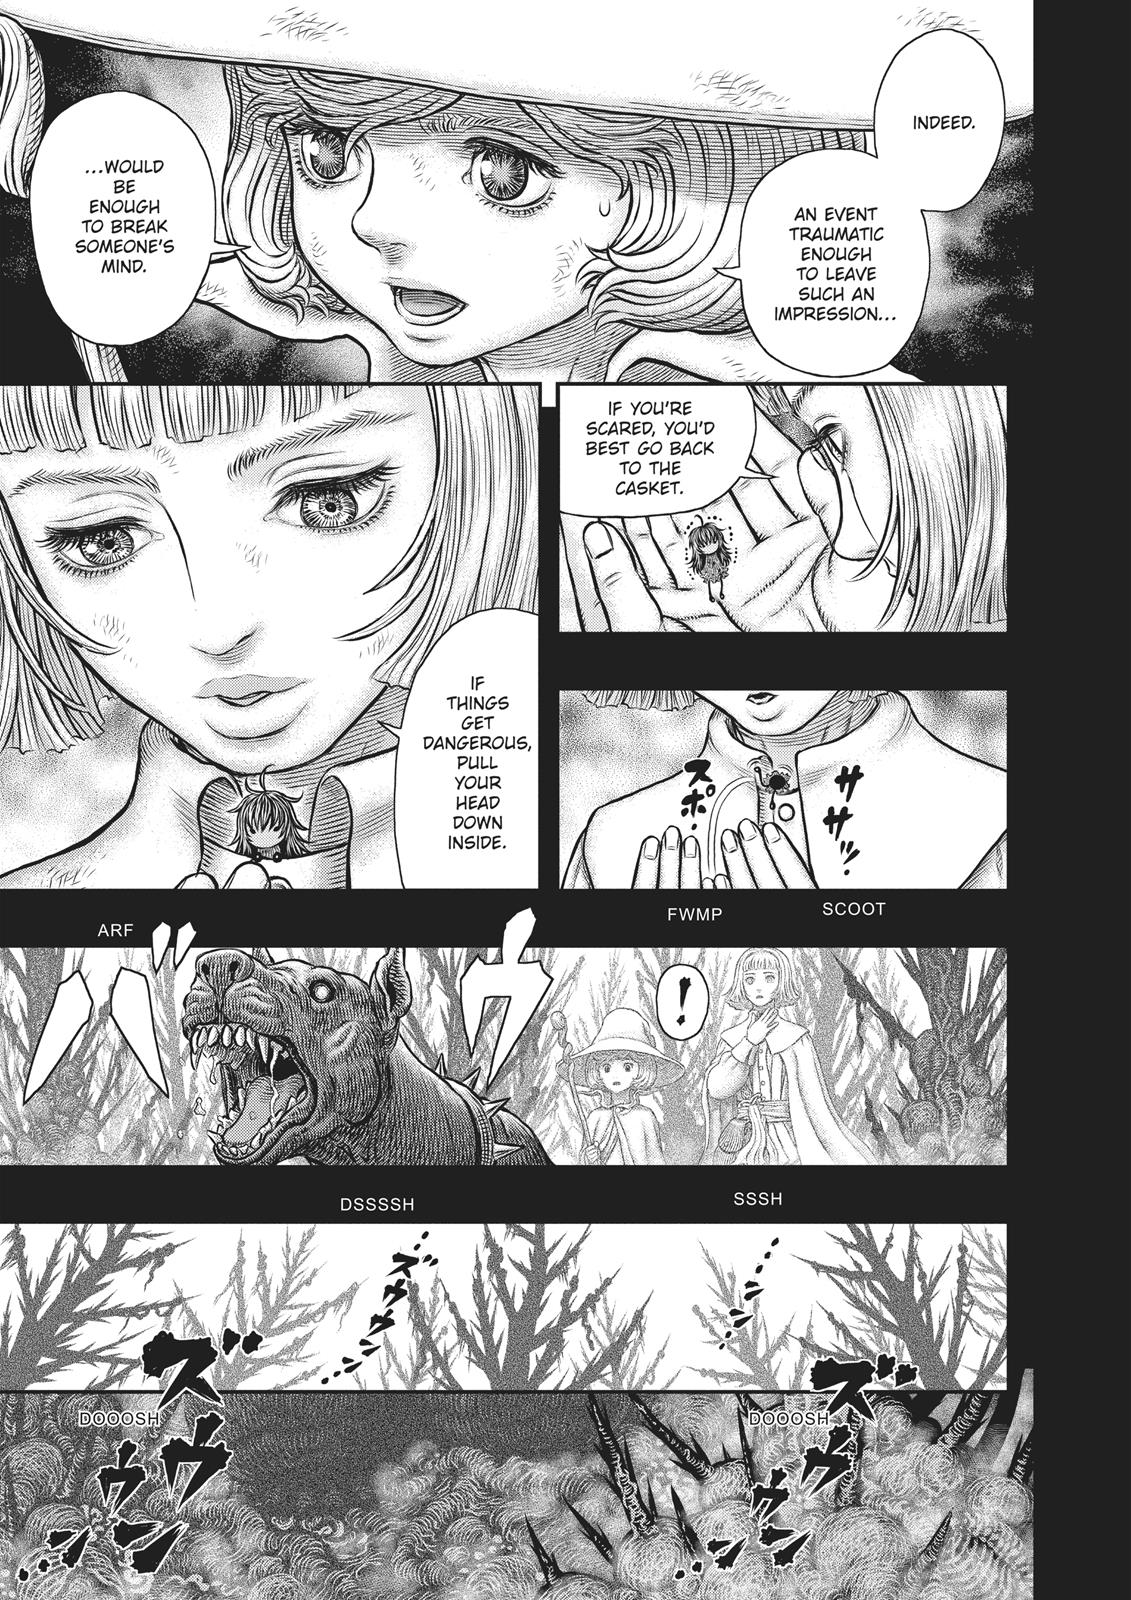 Berserk Manga Chapter 351 image 15